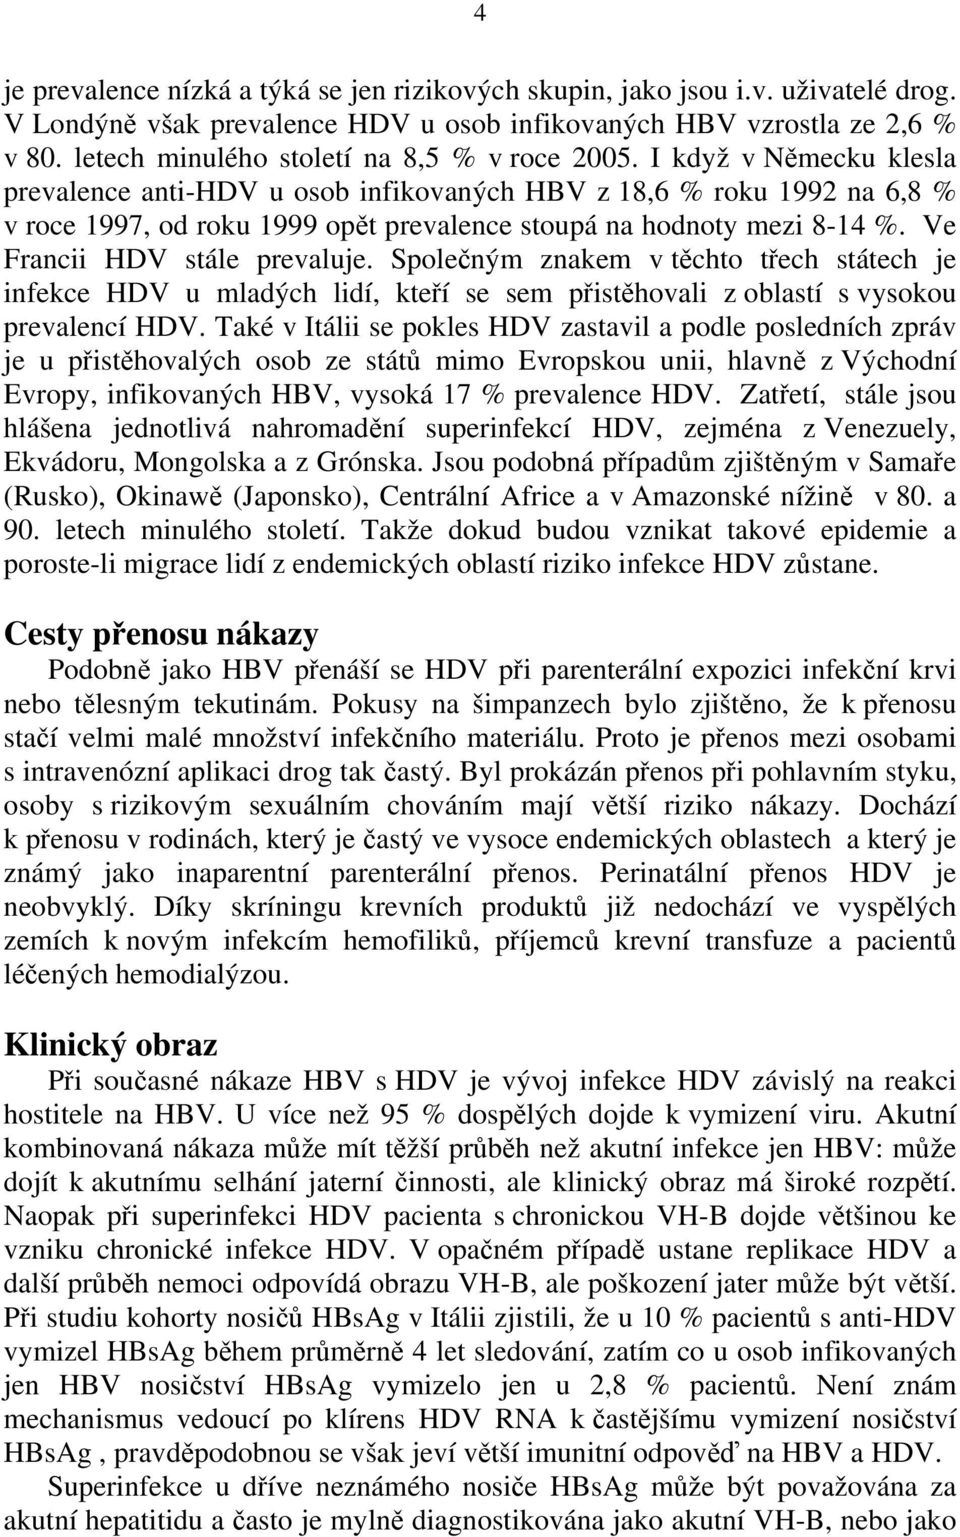 I když v Německu klesla prevalence anti-hdv u osob infikovaných HBV z 18,6 % roku 1992 na 6,8 % v roce 1997, od roku 1999 opět prevalence stoupá na hodnoty mezi 8-14 %. Ve Francii HDV stále prevaluje.